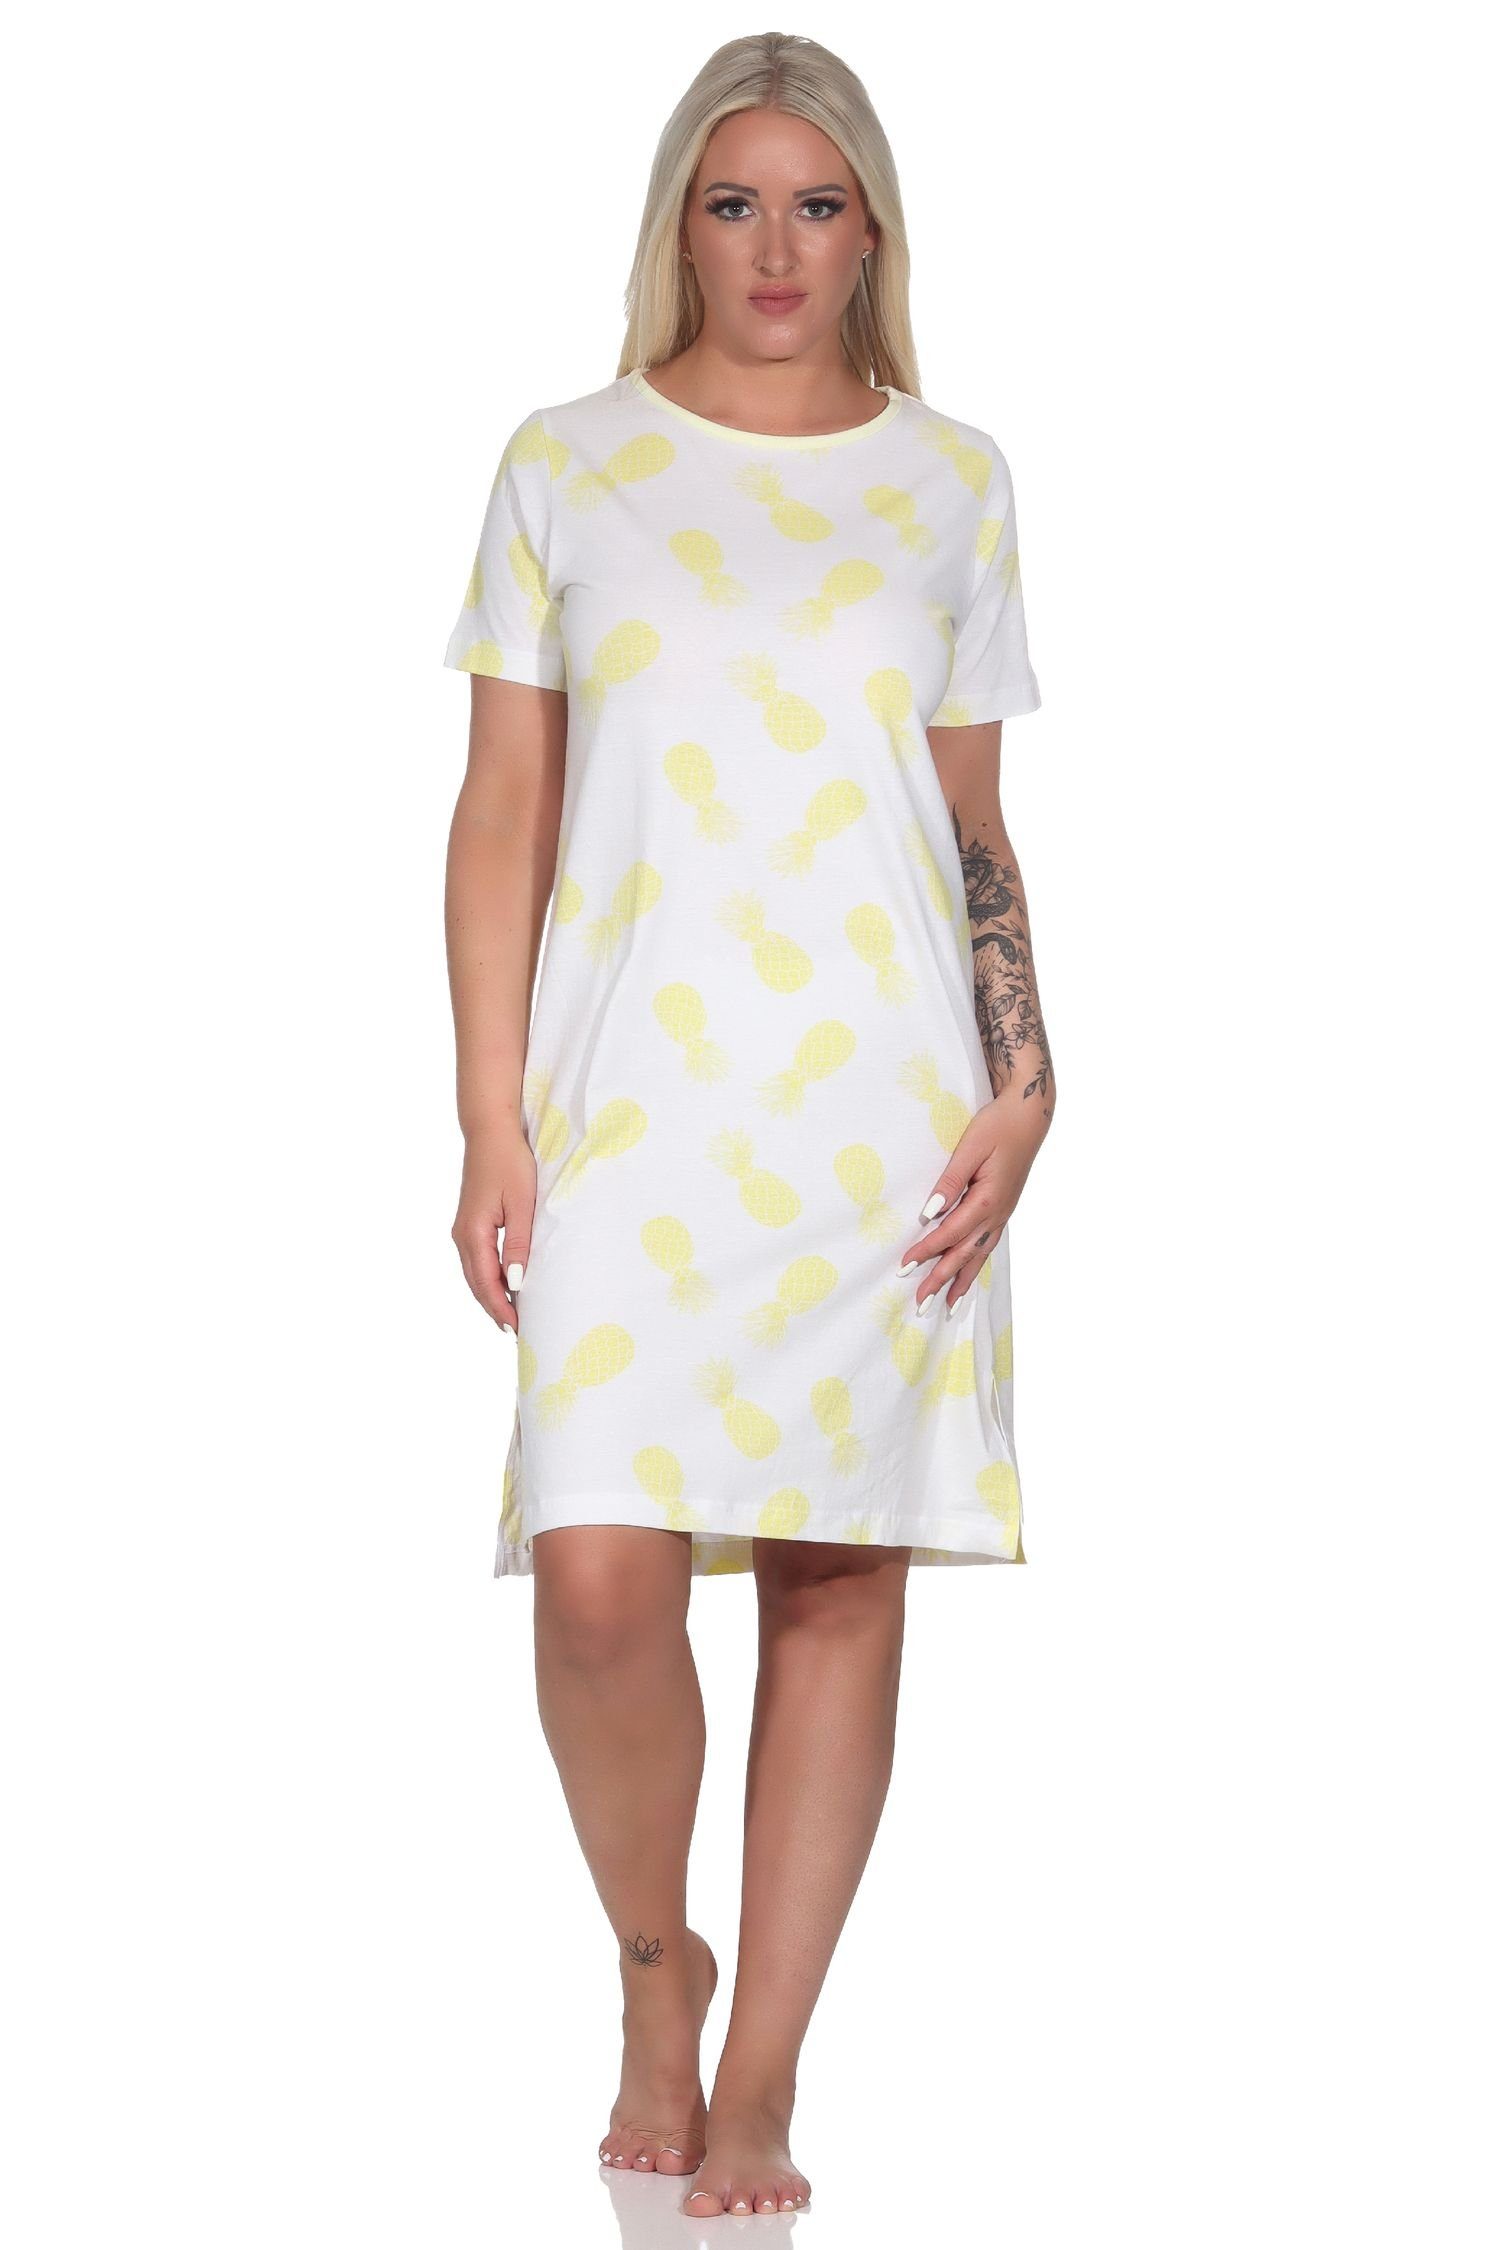 Normann Nachthemd Damen Kurzarm Nachthemd Sleepshirt mit Ananas als Motiv gelb